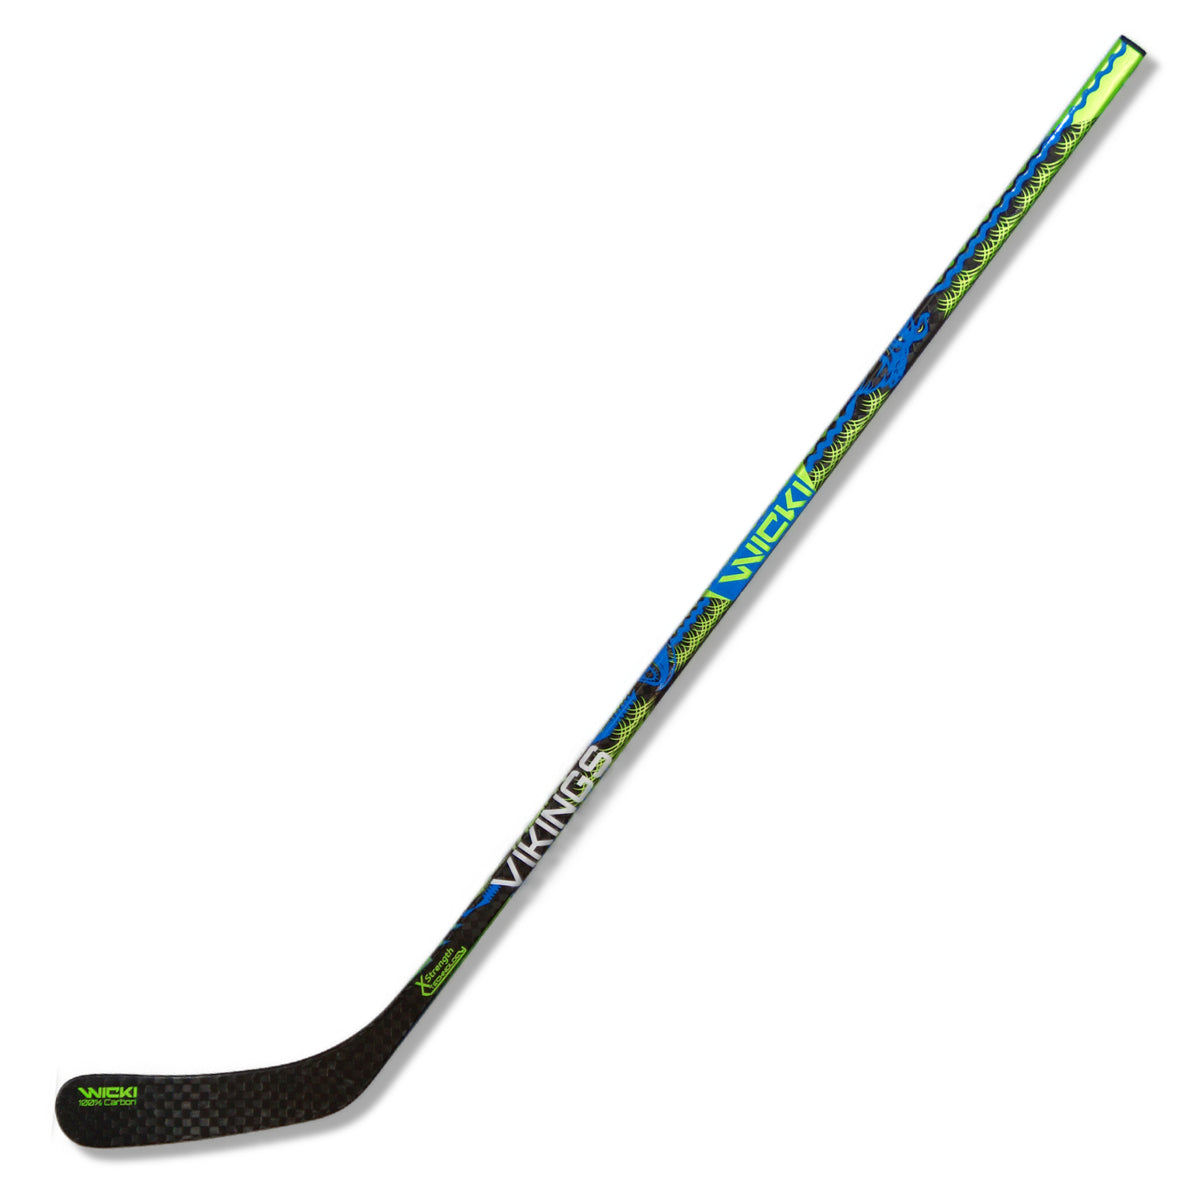 BattleMode 30 Flex Junior Hockey Sticks from